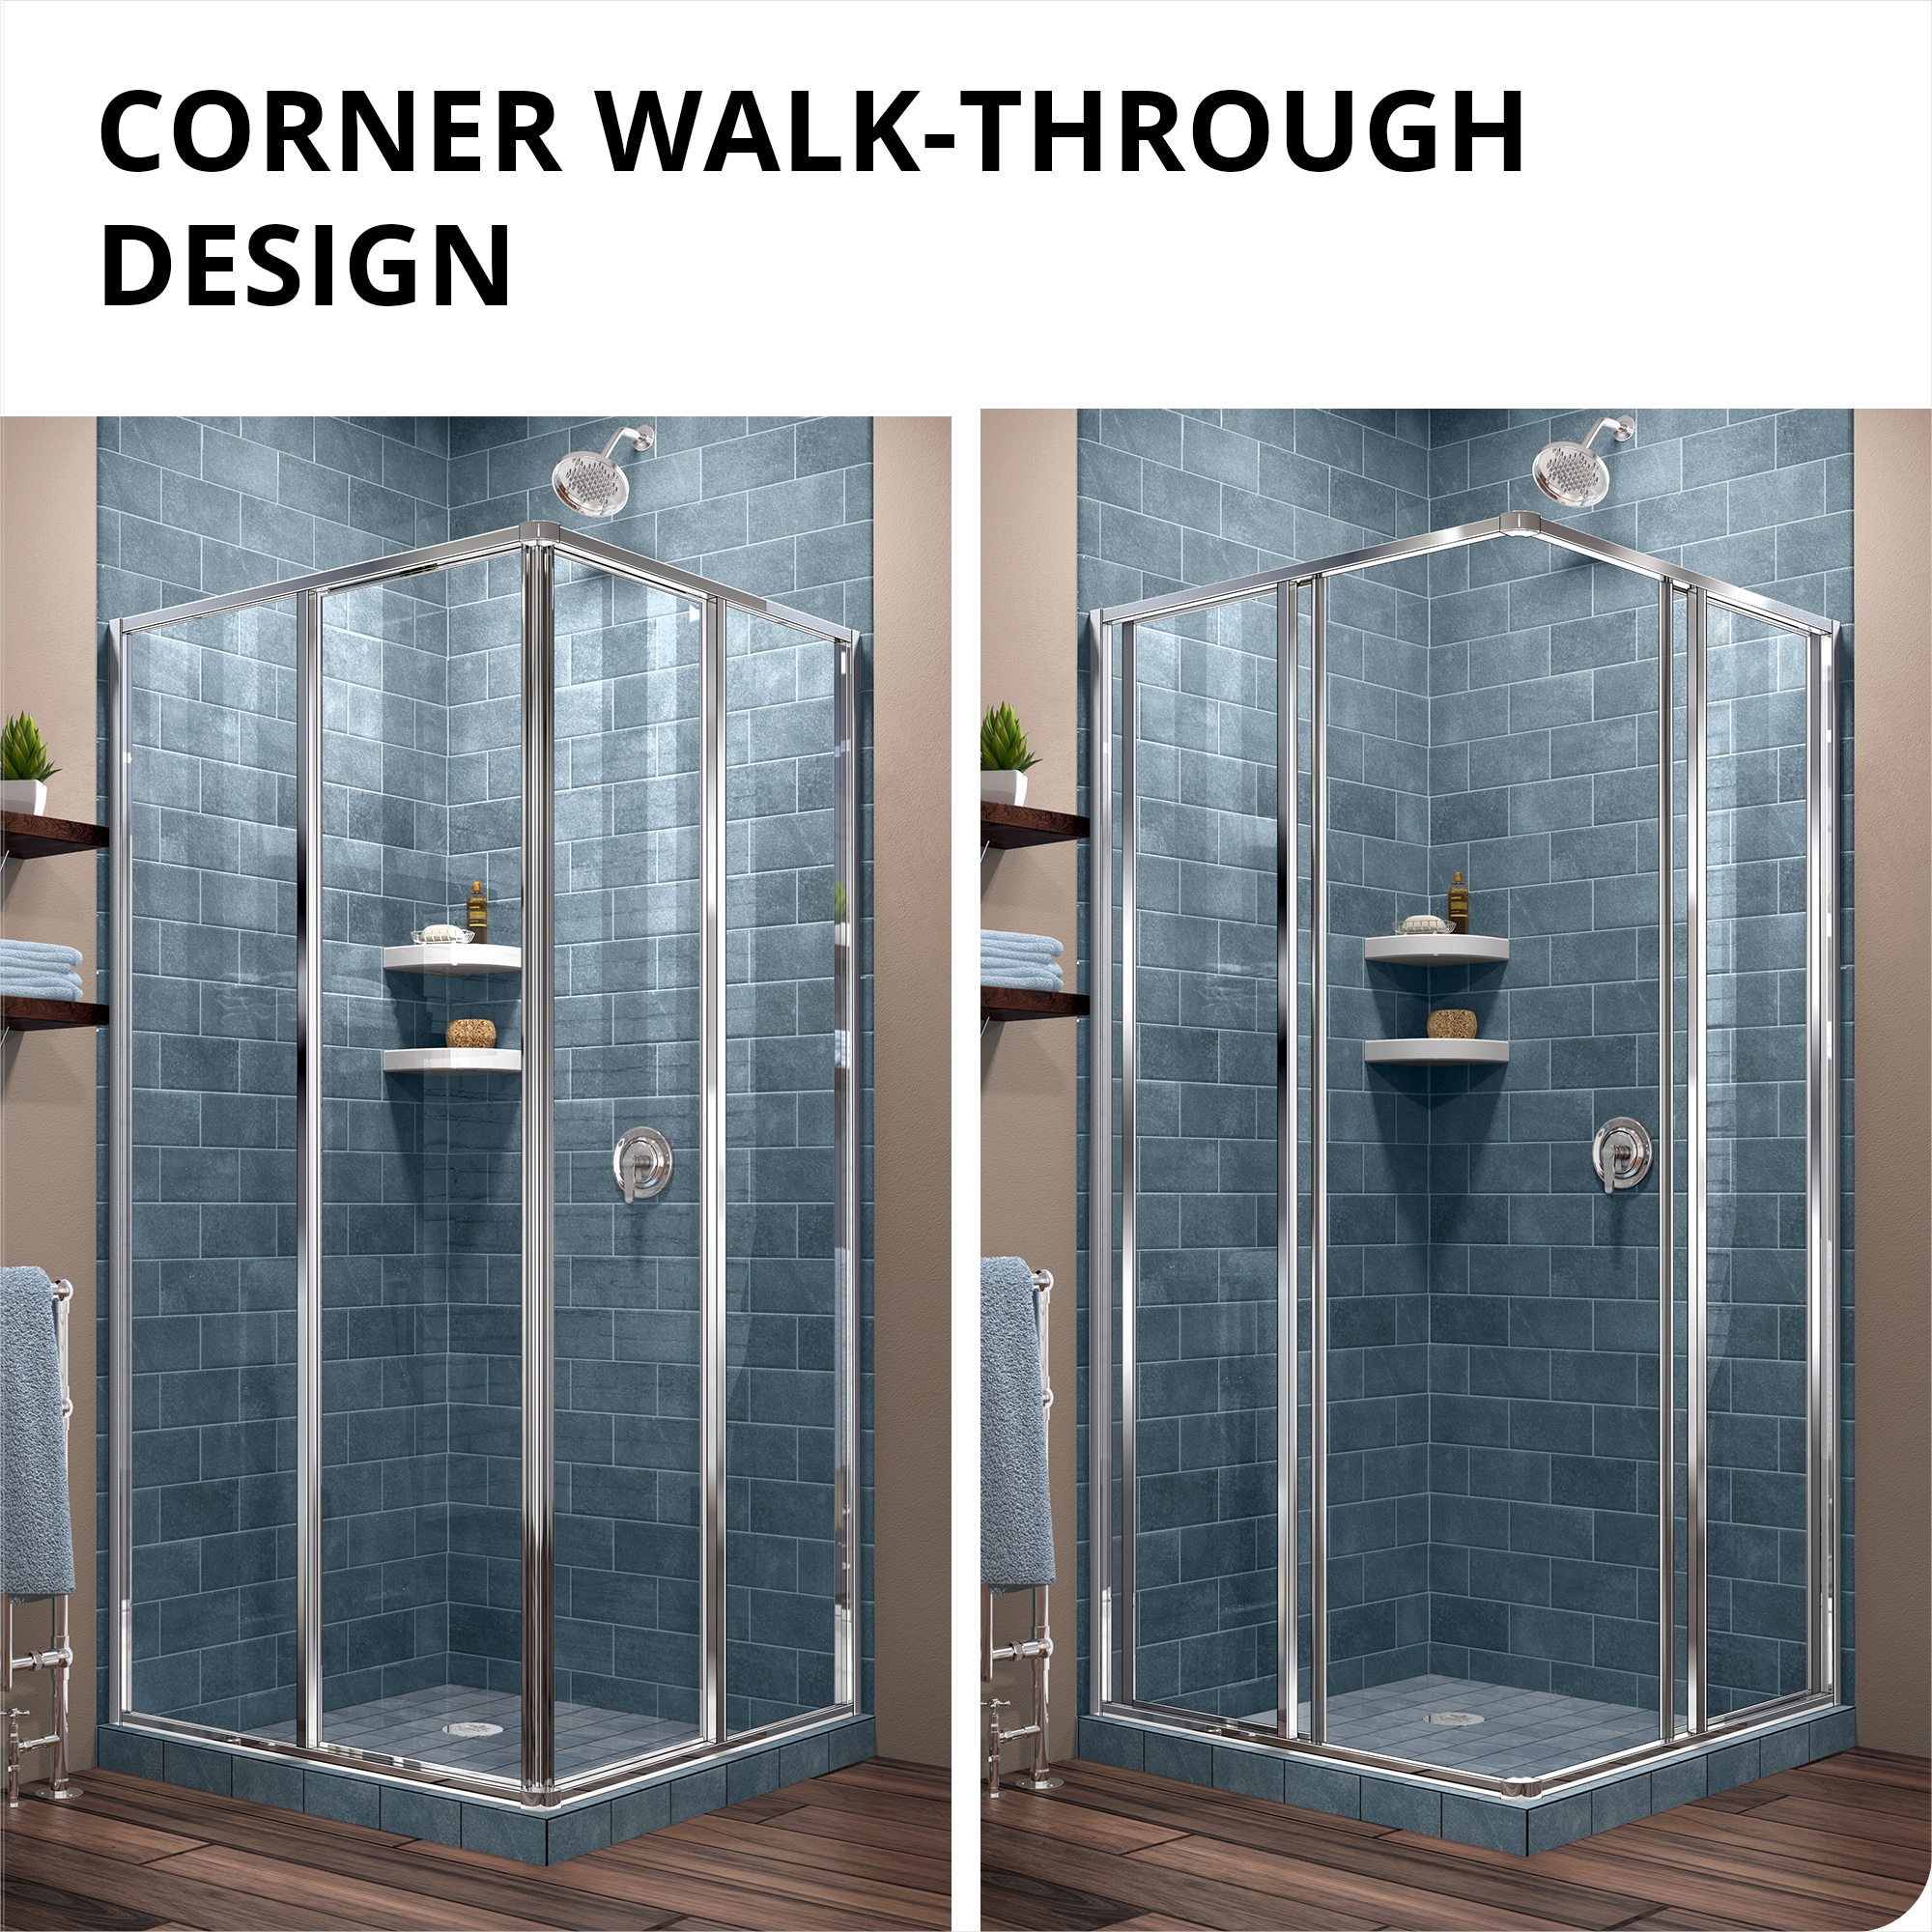 Cornerview 36 in. L x 36 in. W x 76.75 in. H Corner Drain Corner Shower  Stall Kit in Brushed Nickel